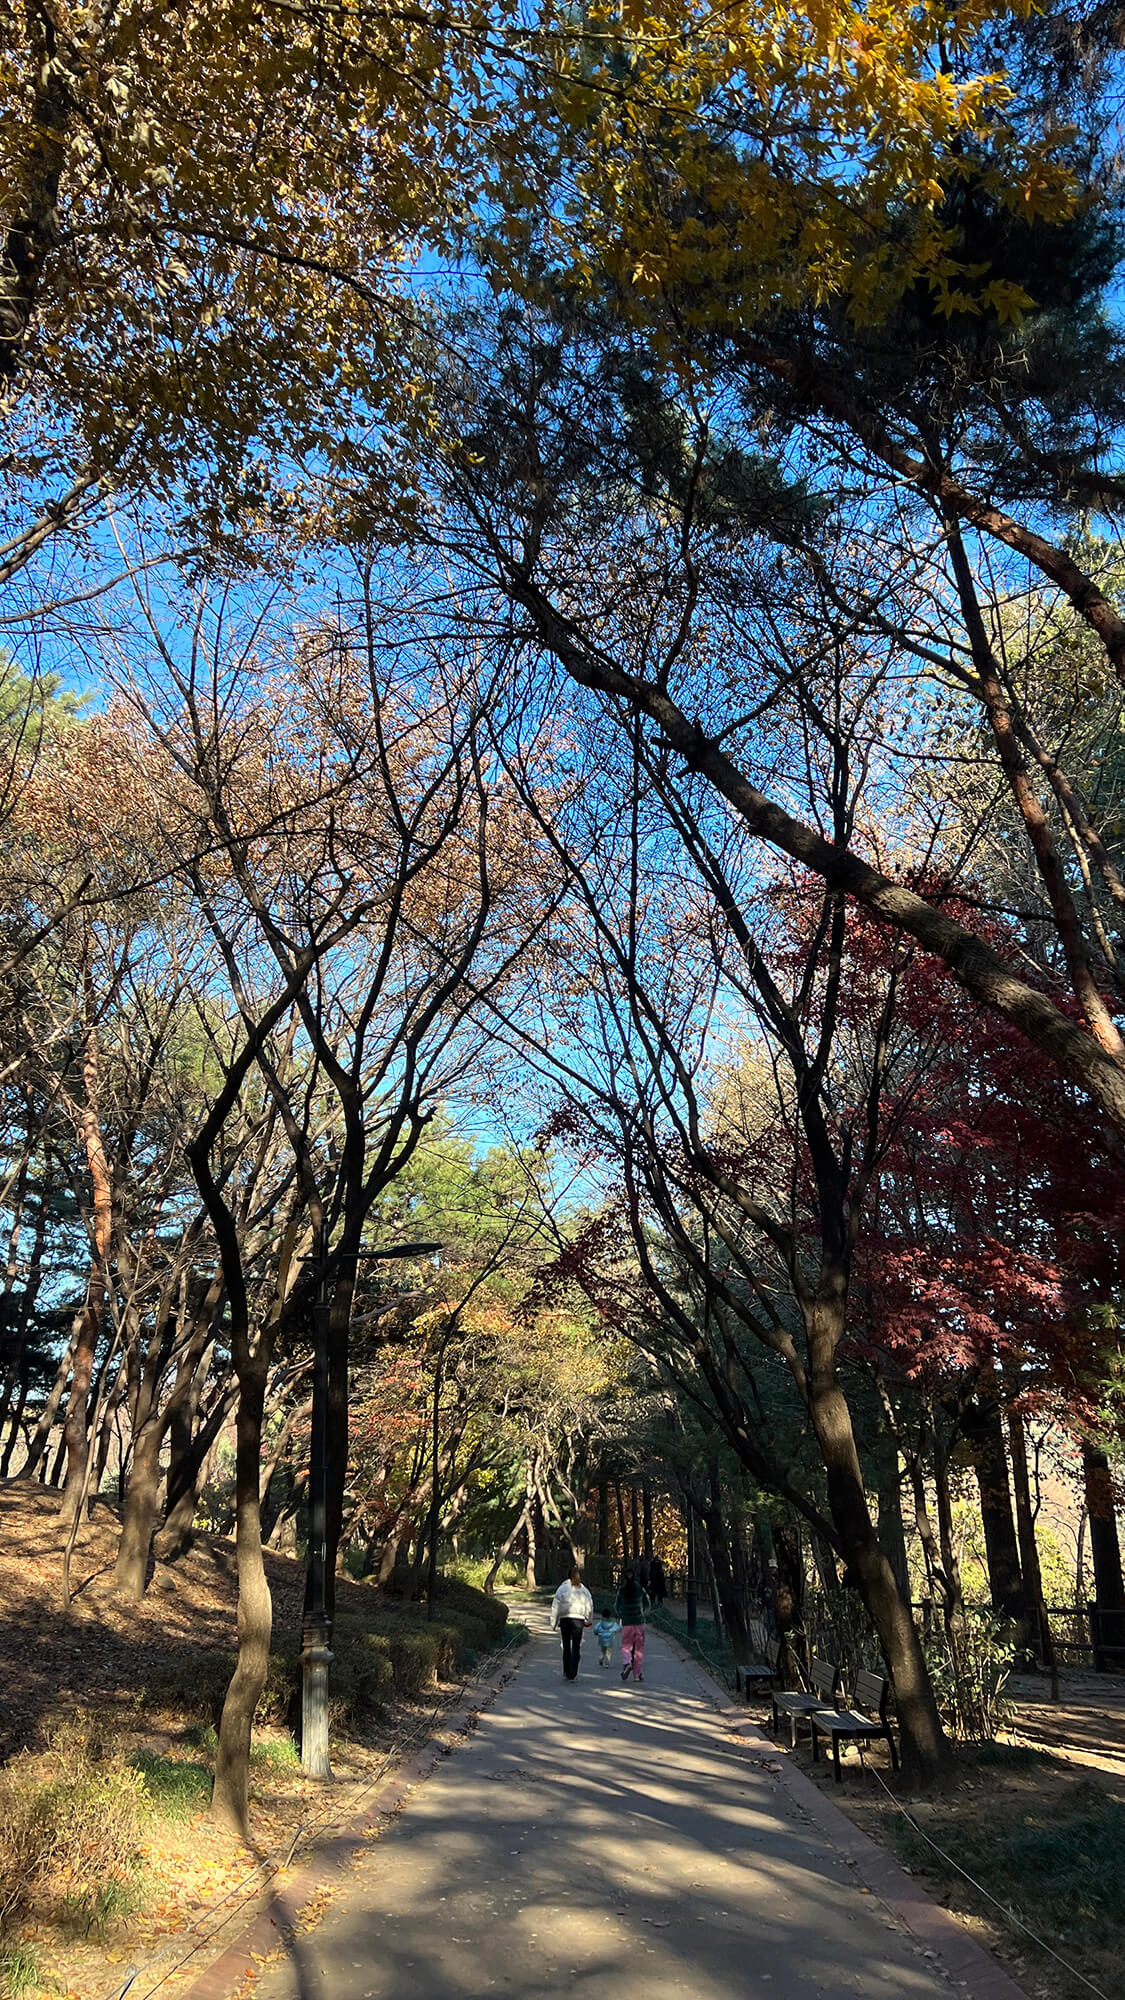 랜드-하얏트-서울- 호캉스-남산공원